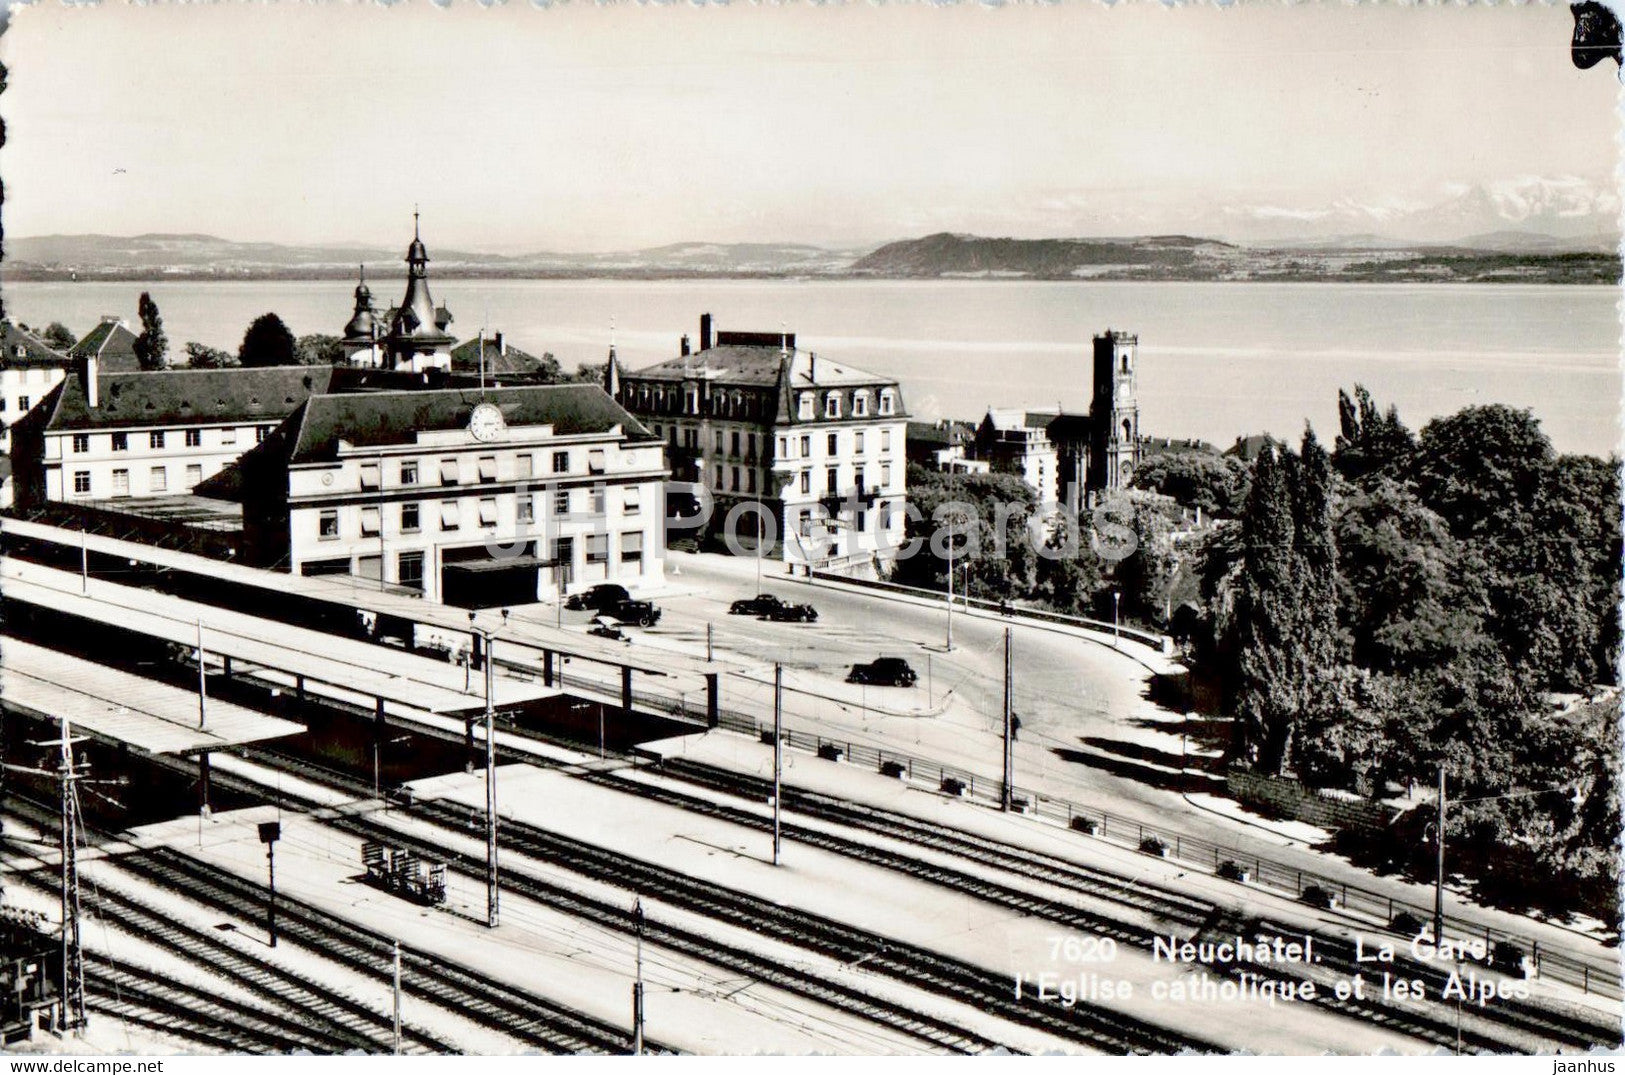 Neuchatel - La Gare - L'Eglise catholique et les Alpes - railway station - 7620 - old postcard - Switzerland - used - JH Postcards